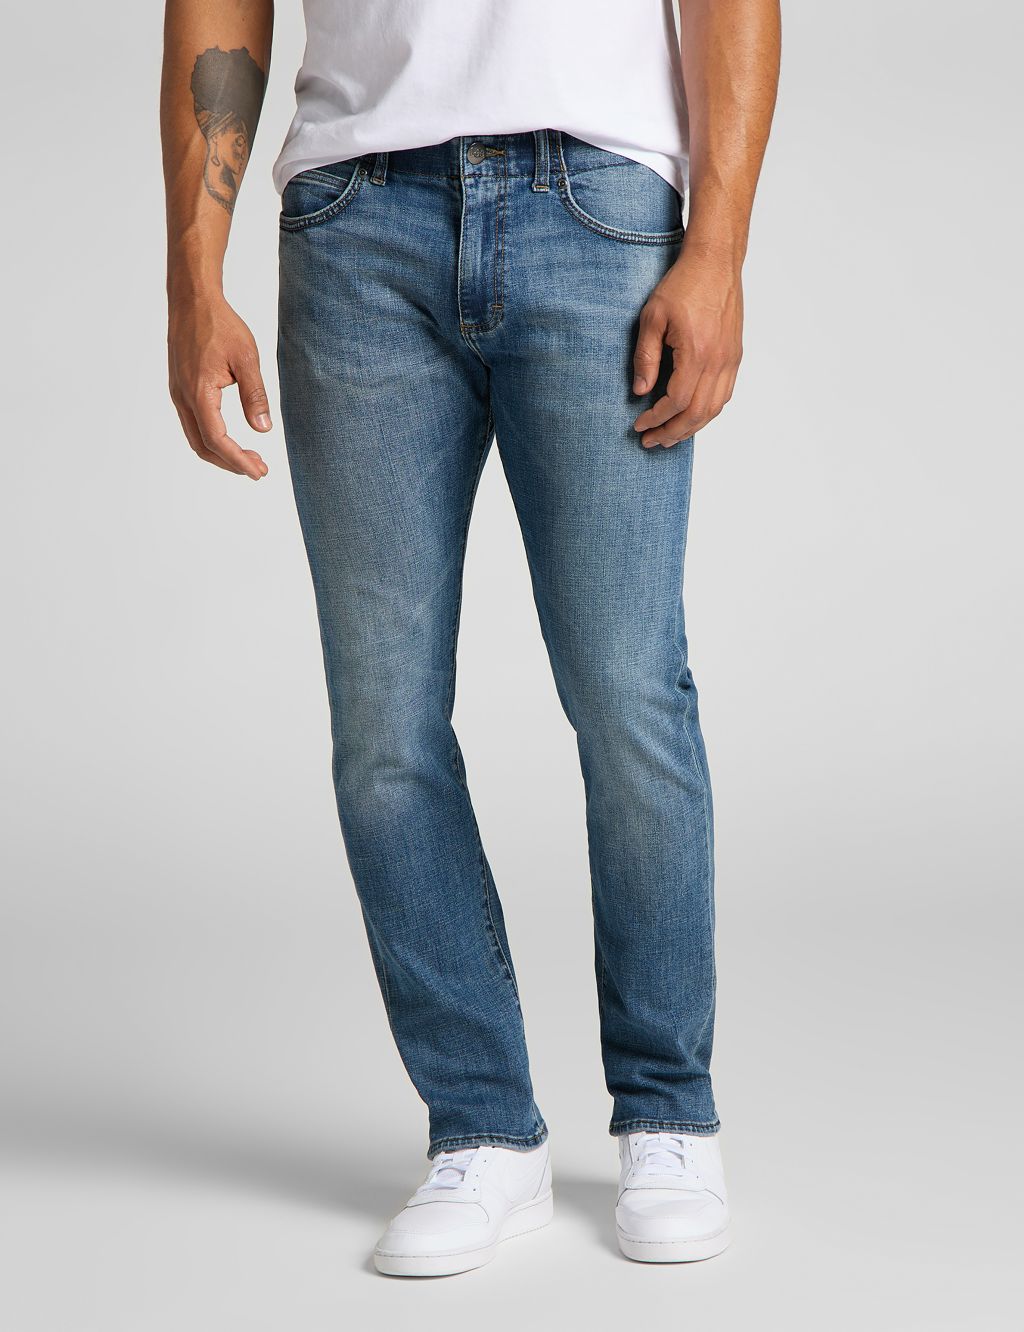 MVP Slim Fit 5 Pocket Jeans image 1